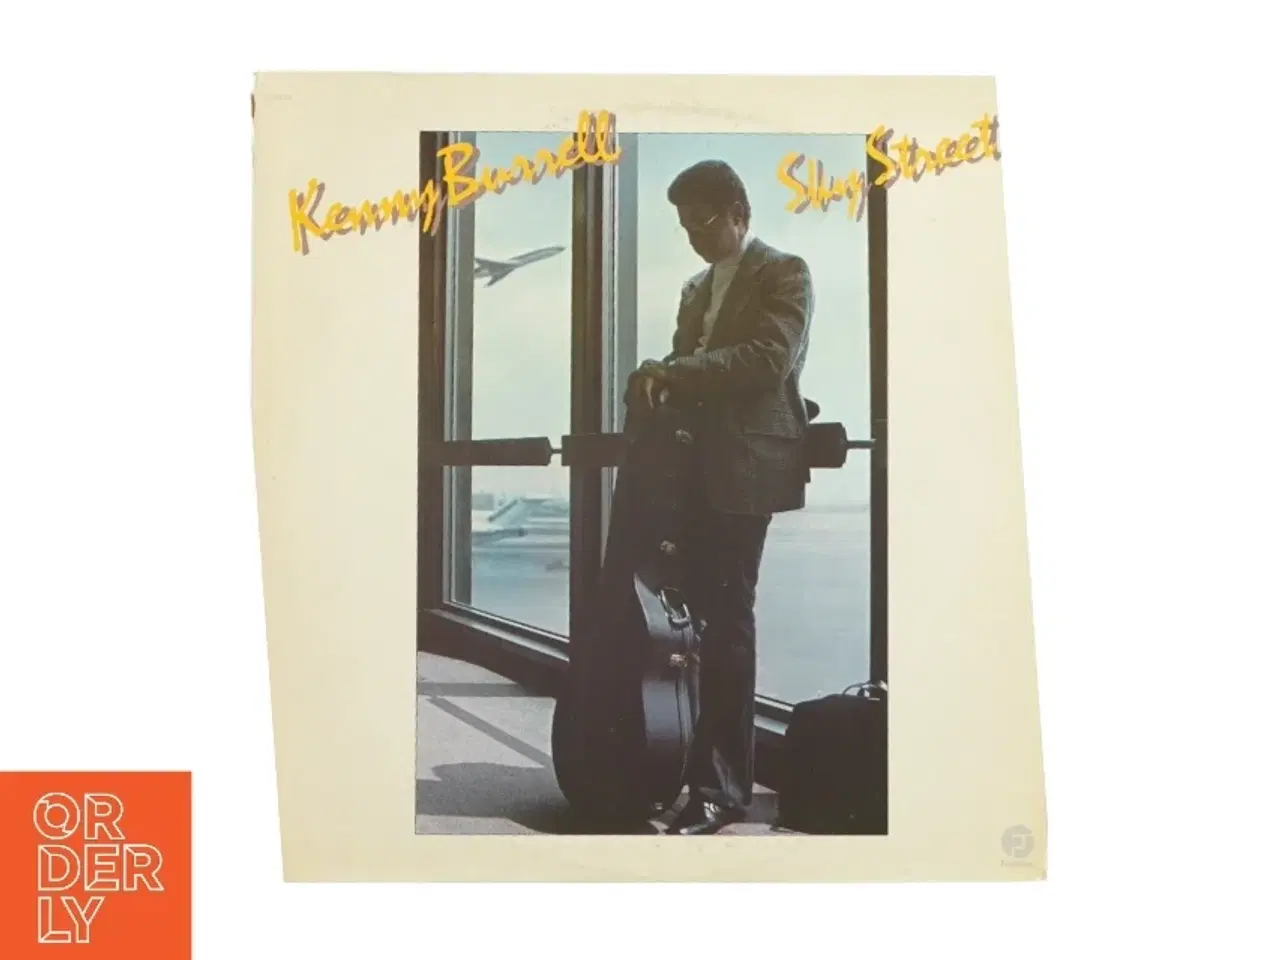 Billede 1 - Sky street af Kenny Burrell fra LP